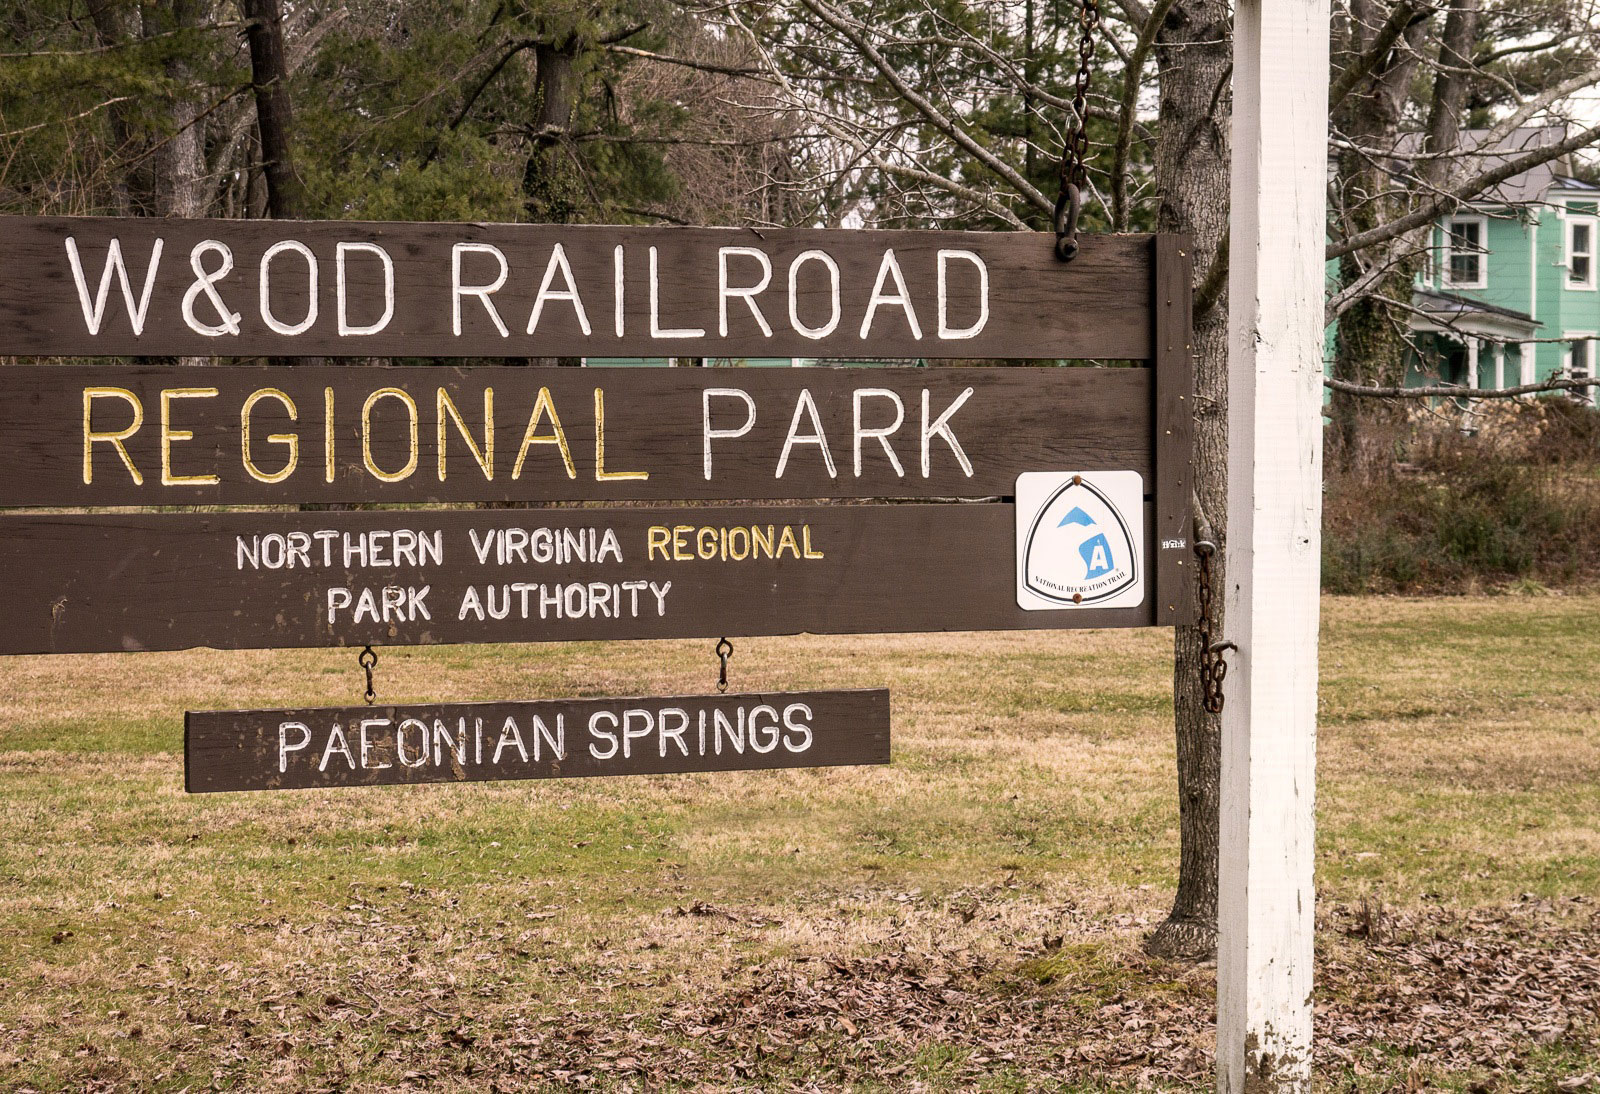 W&OD Railroad Regional Park